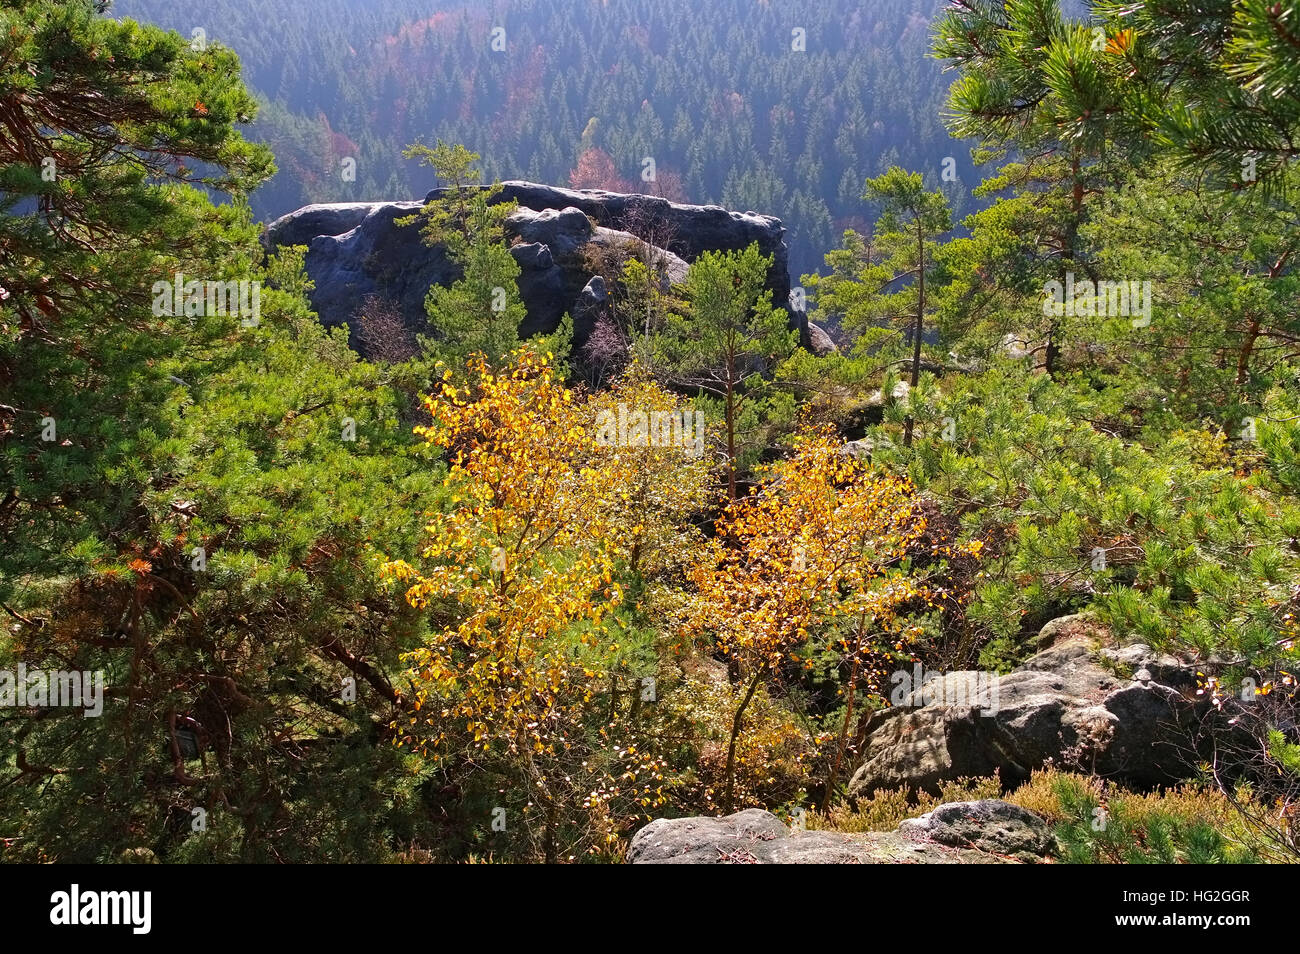 Elbsandsteingebirge - rock en las montañas de arenisca del Elba, en el Estado federado de Sajonia Foto de stock